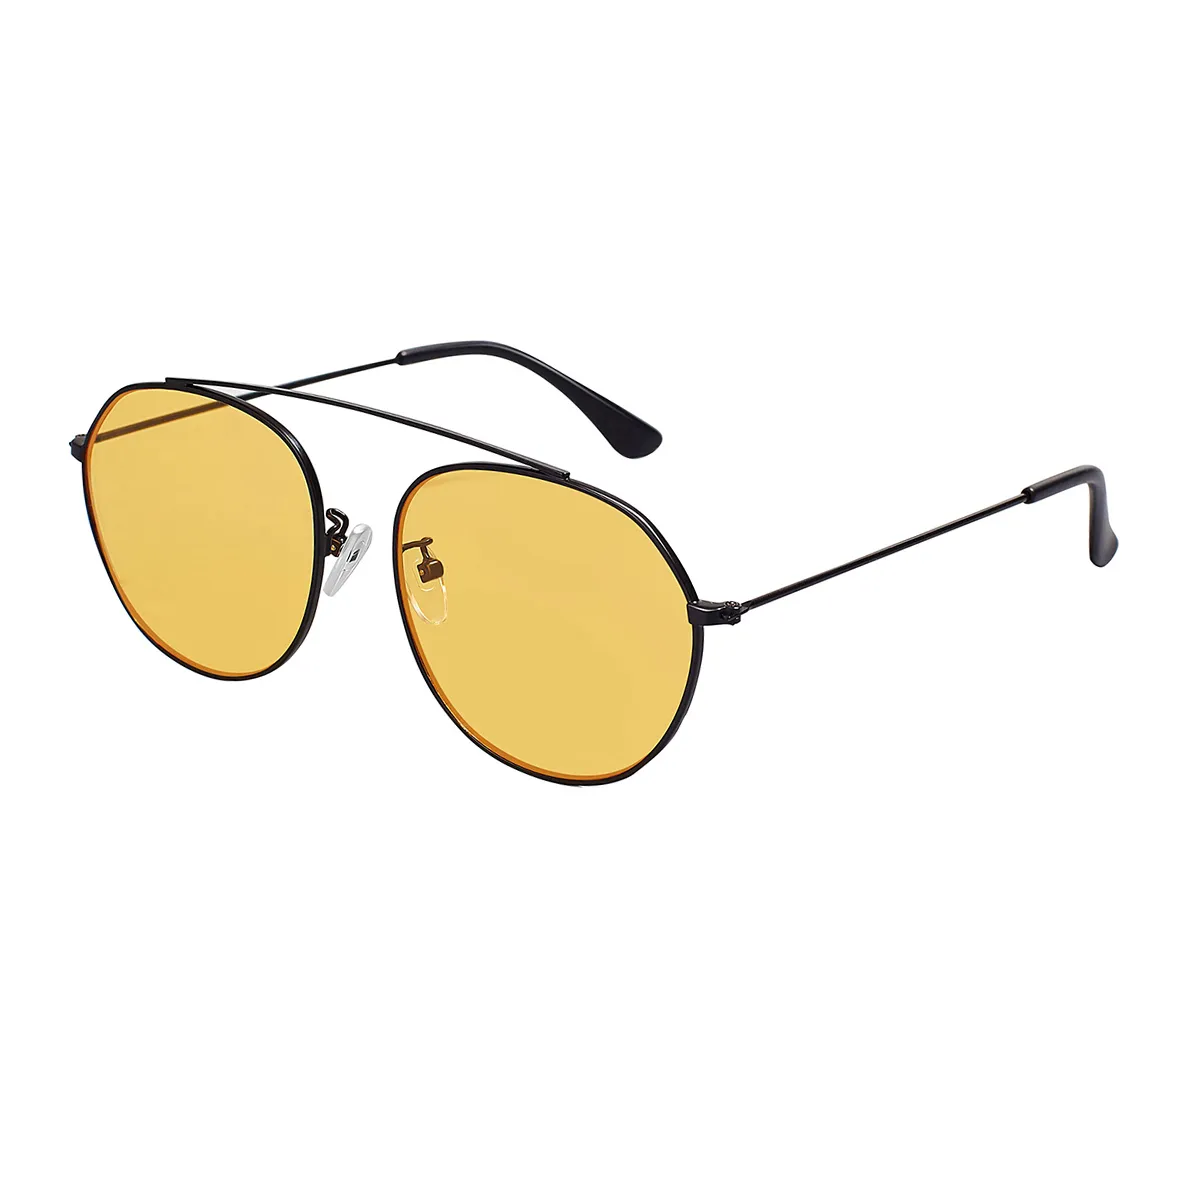 Belmar - Aviator Black Sunglasses for Men & Women